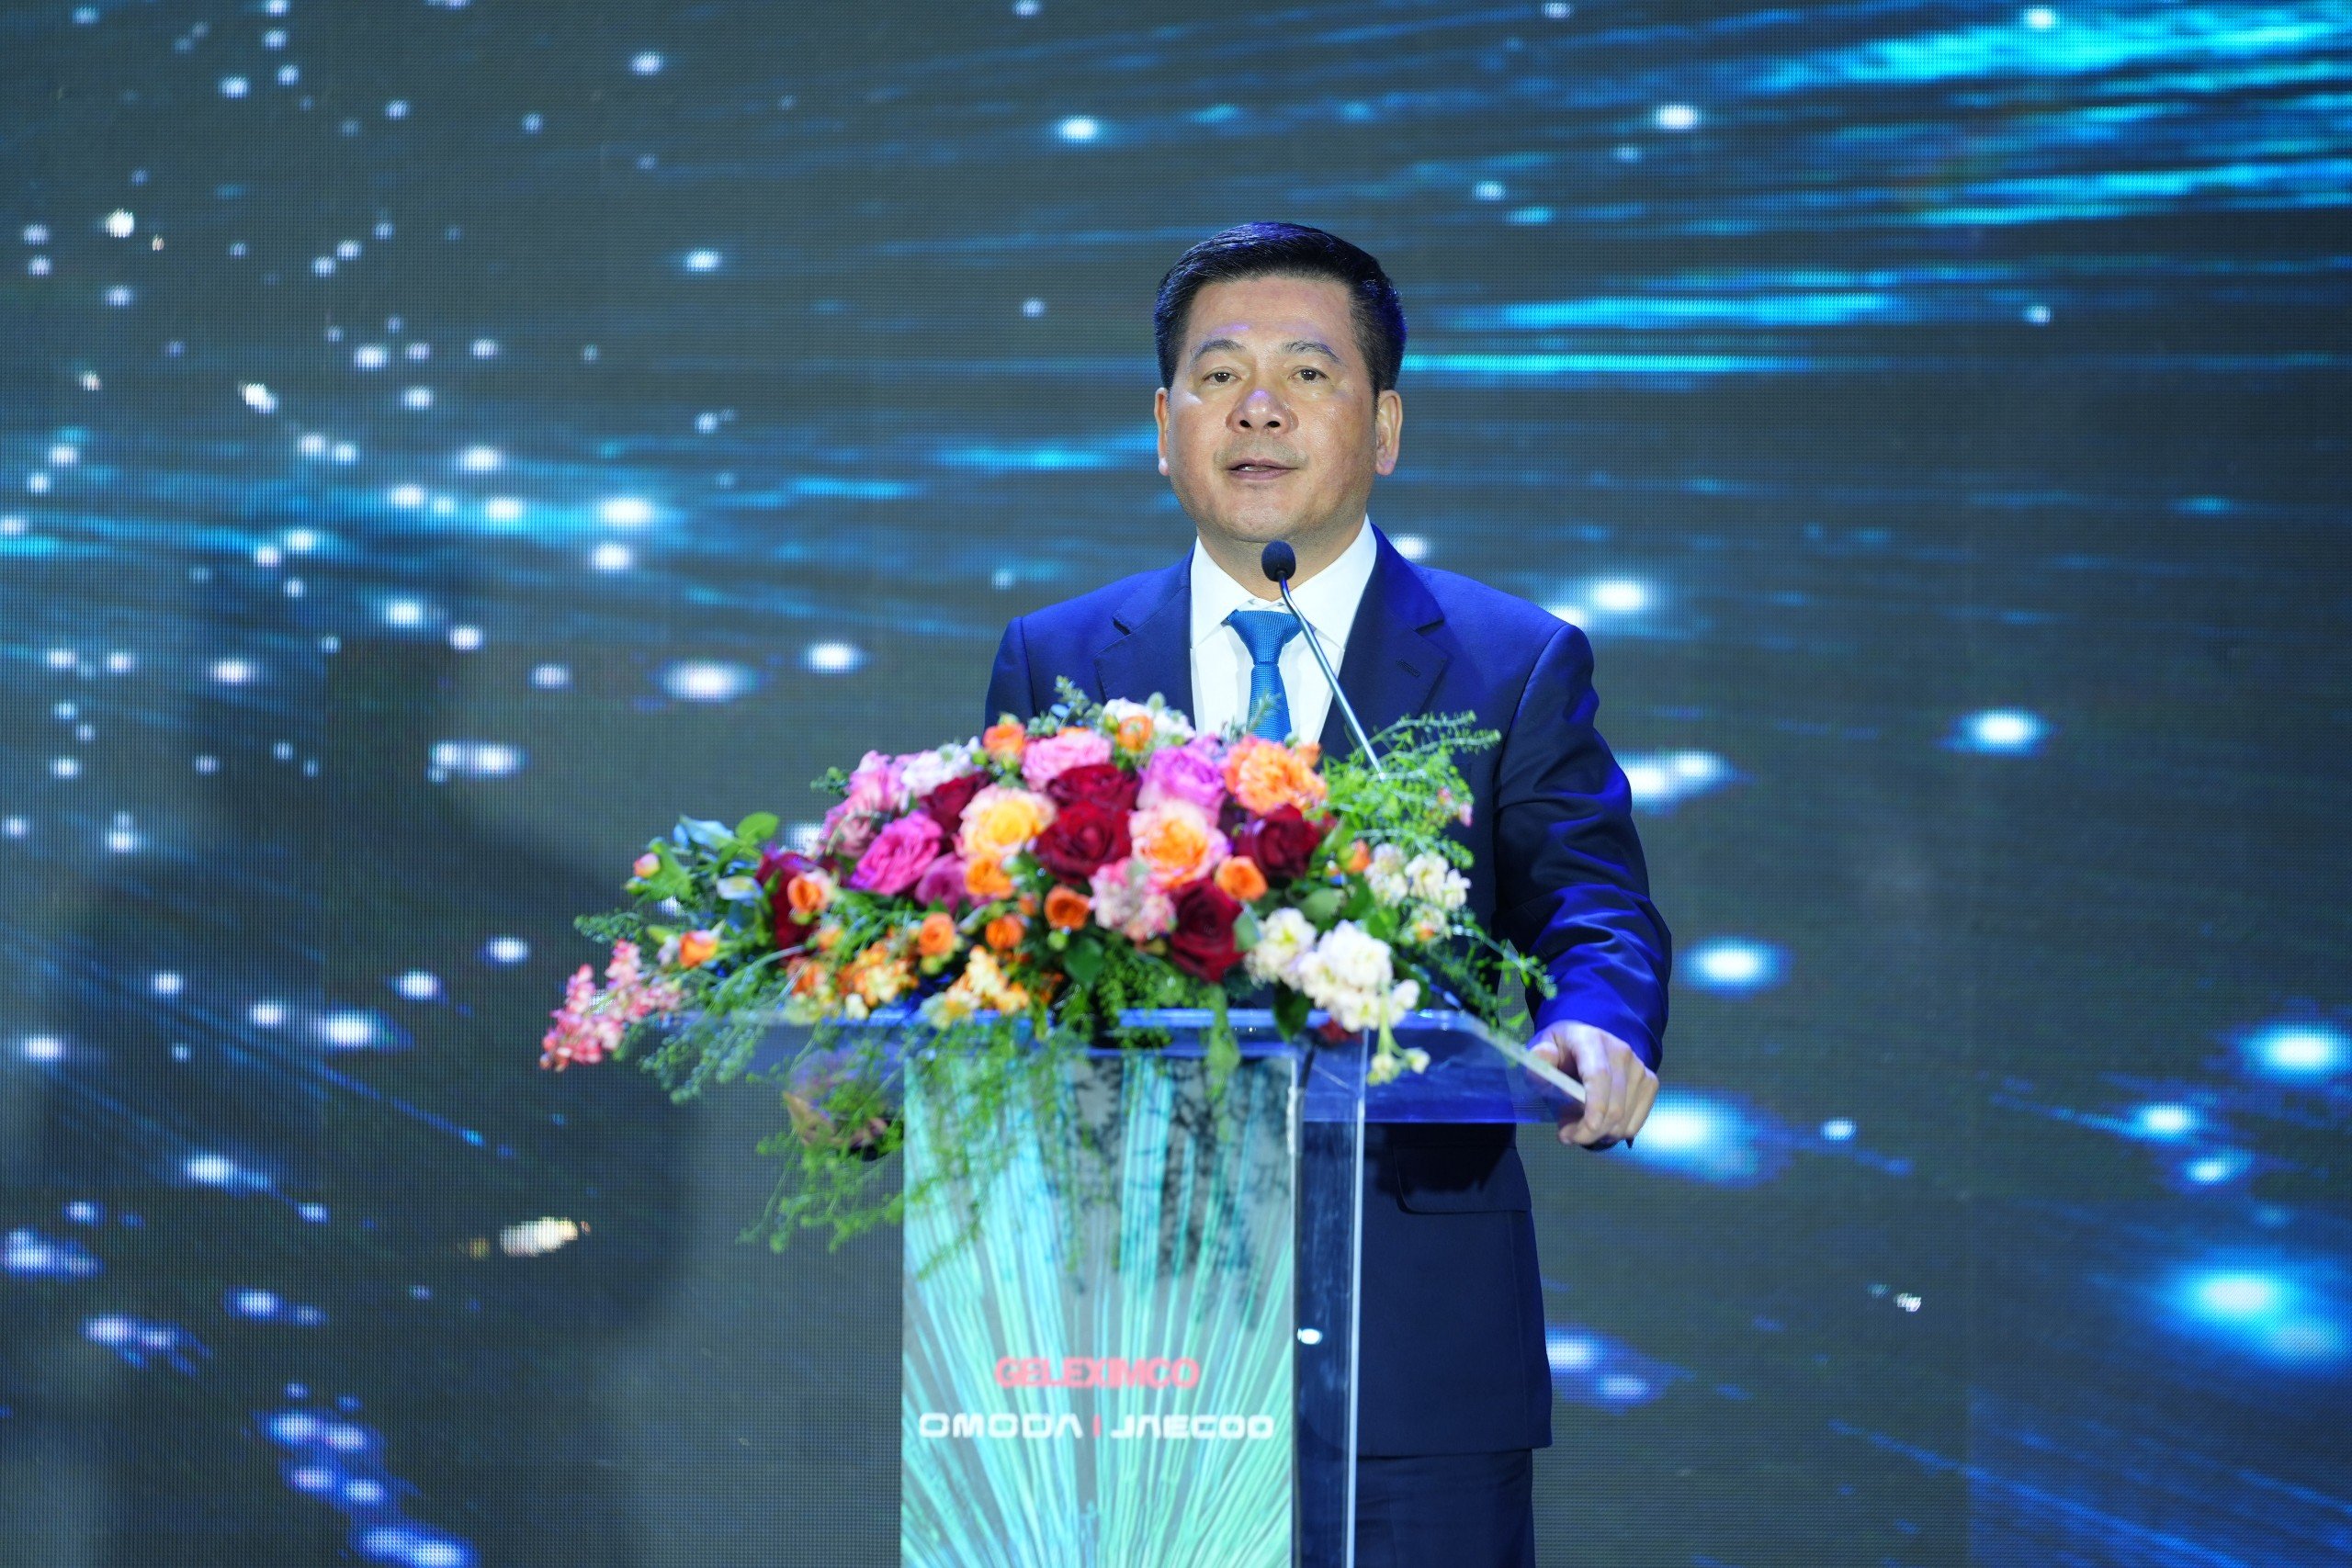 Liên doanh GELEXIMCO và OMODA&JAECOO đầu tư nhà máy sản xuất ô tô tại Việt Nam- Ảnh 2.